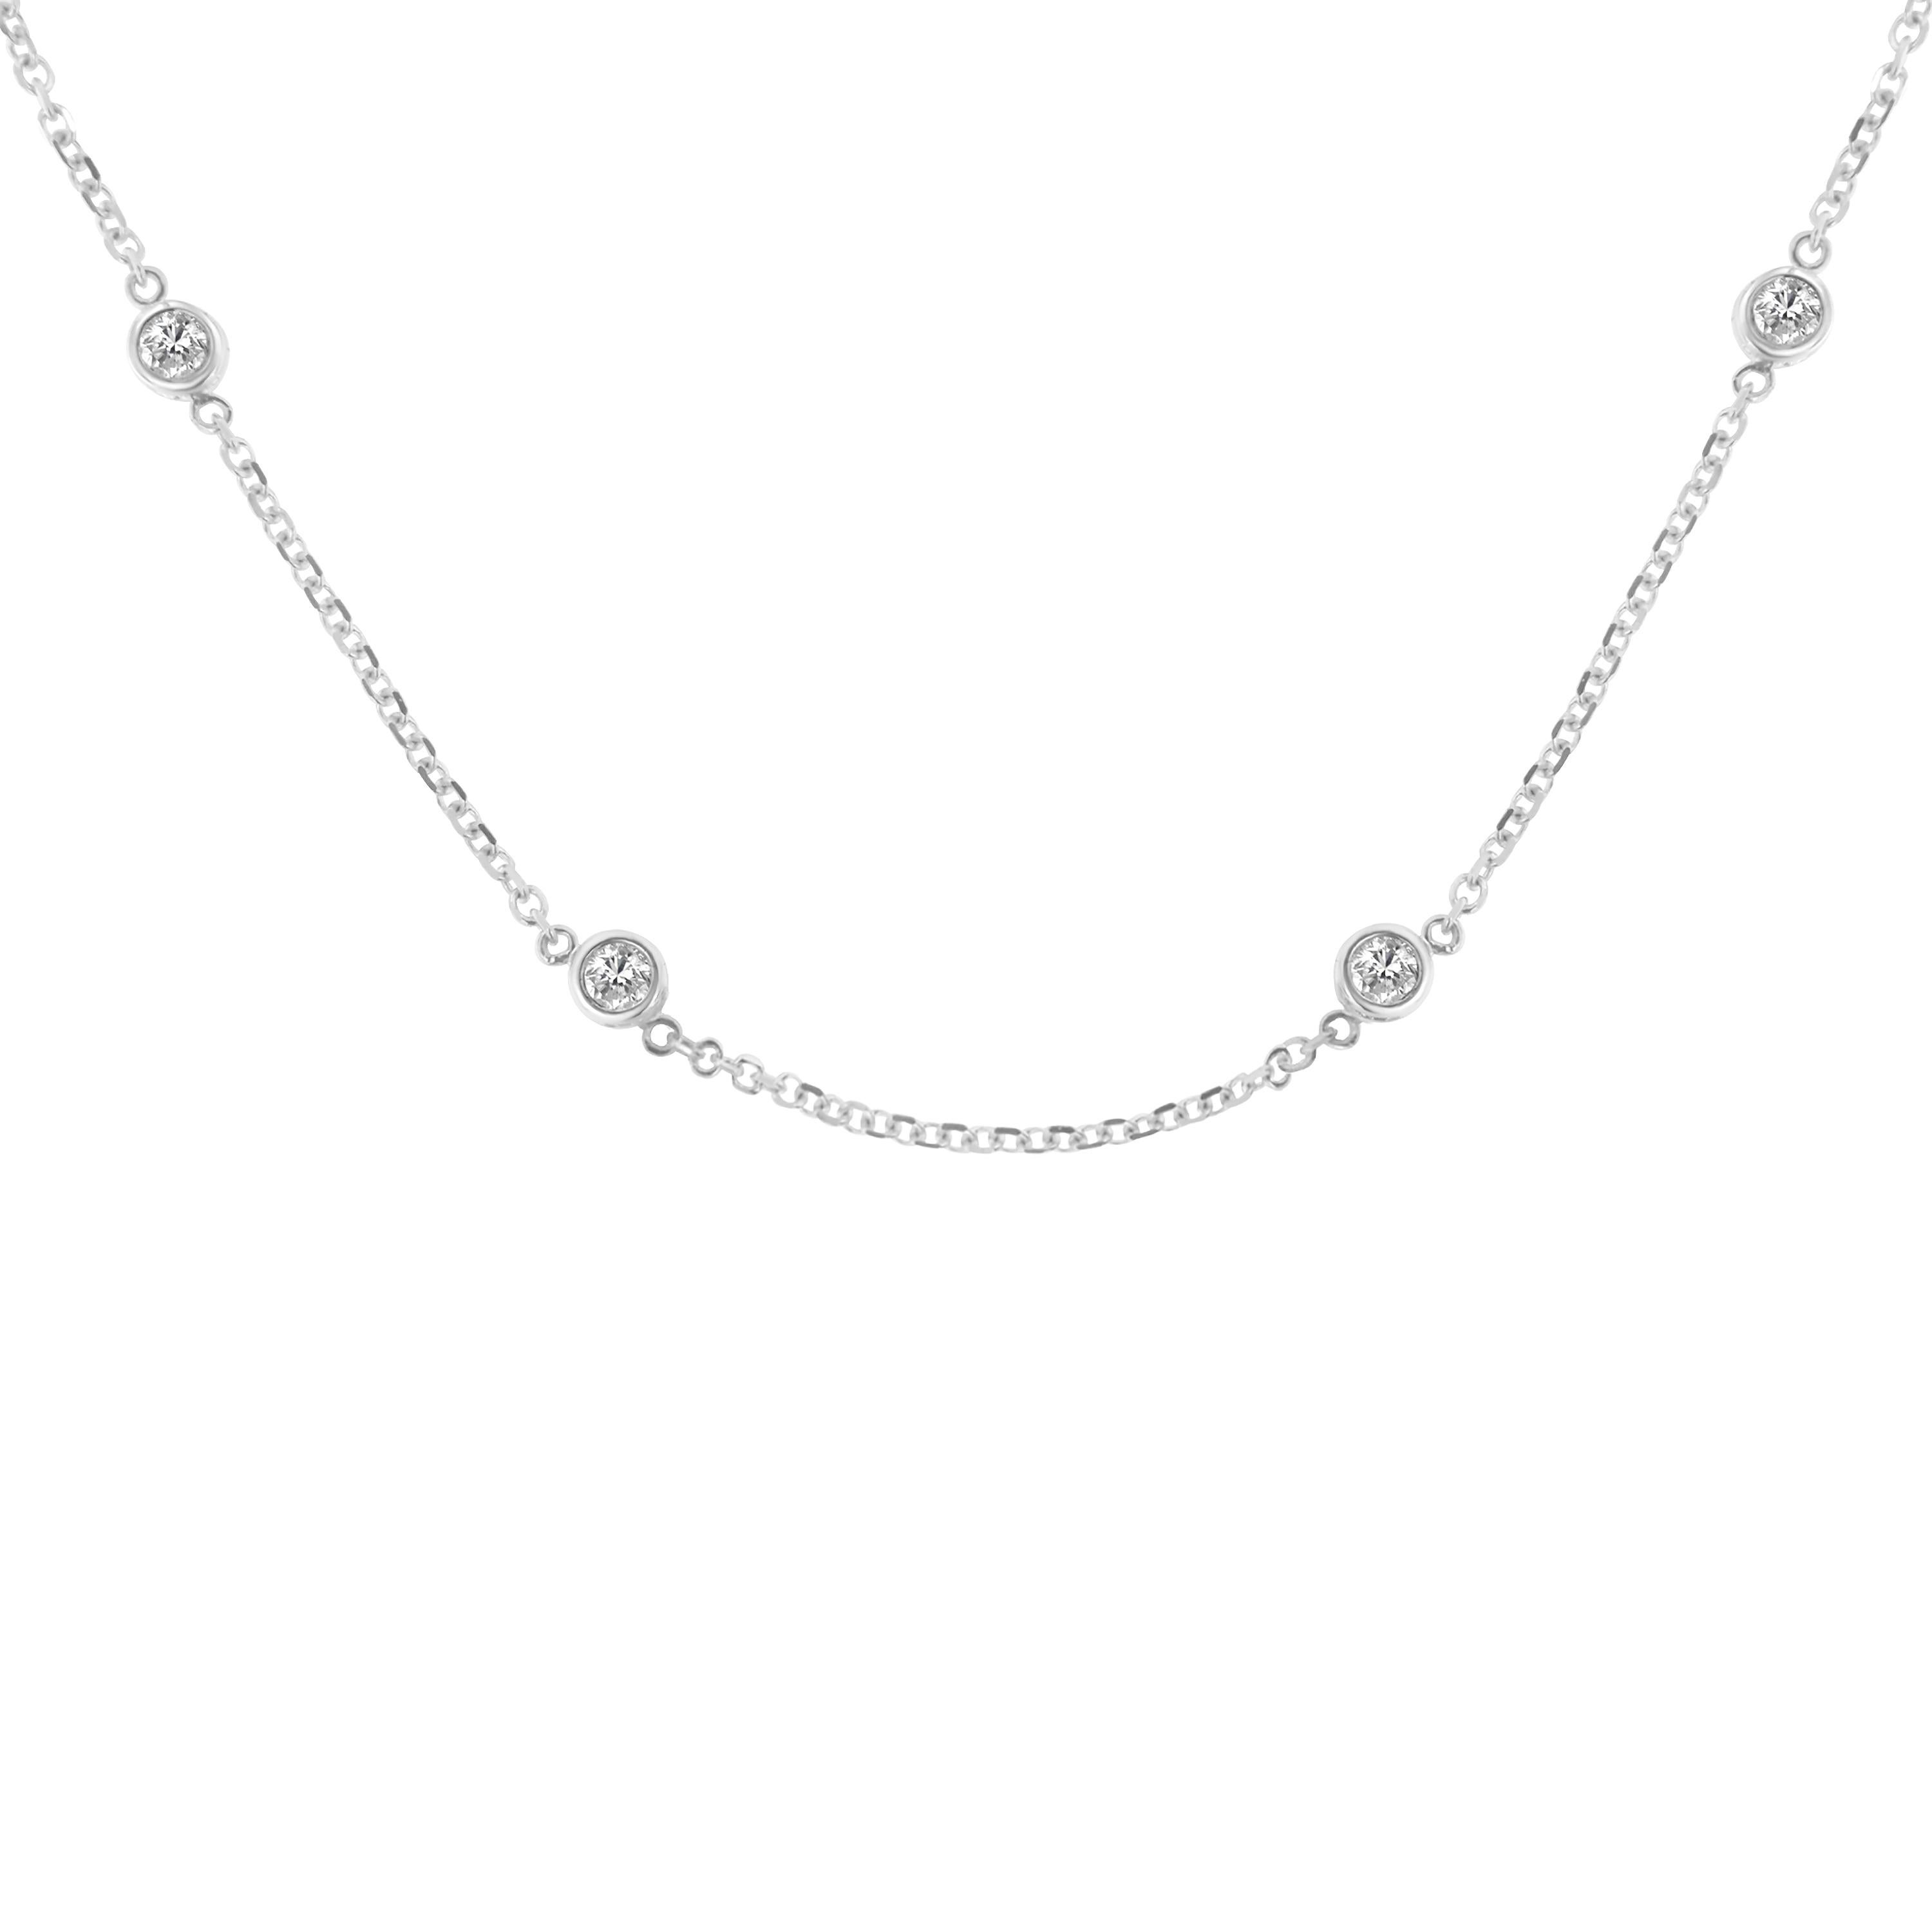 1 carat diamond station necklace